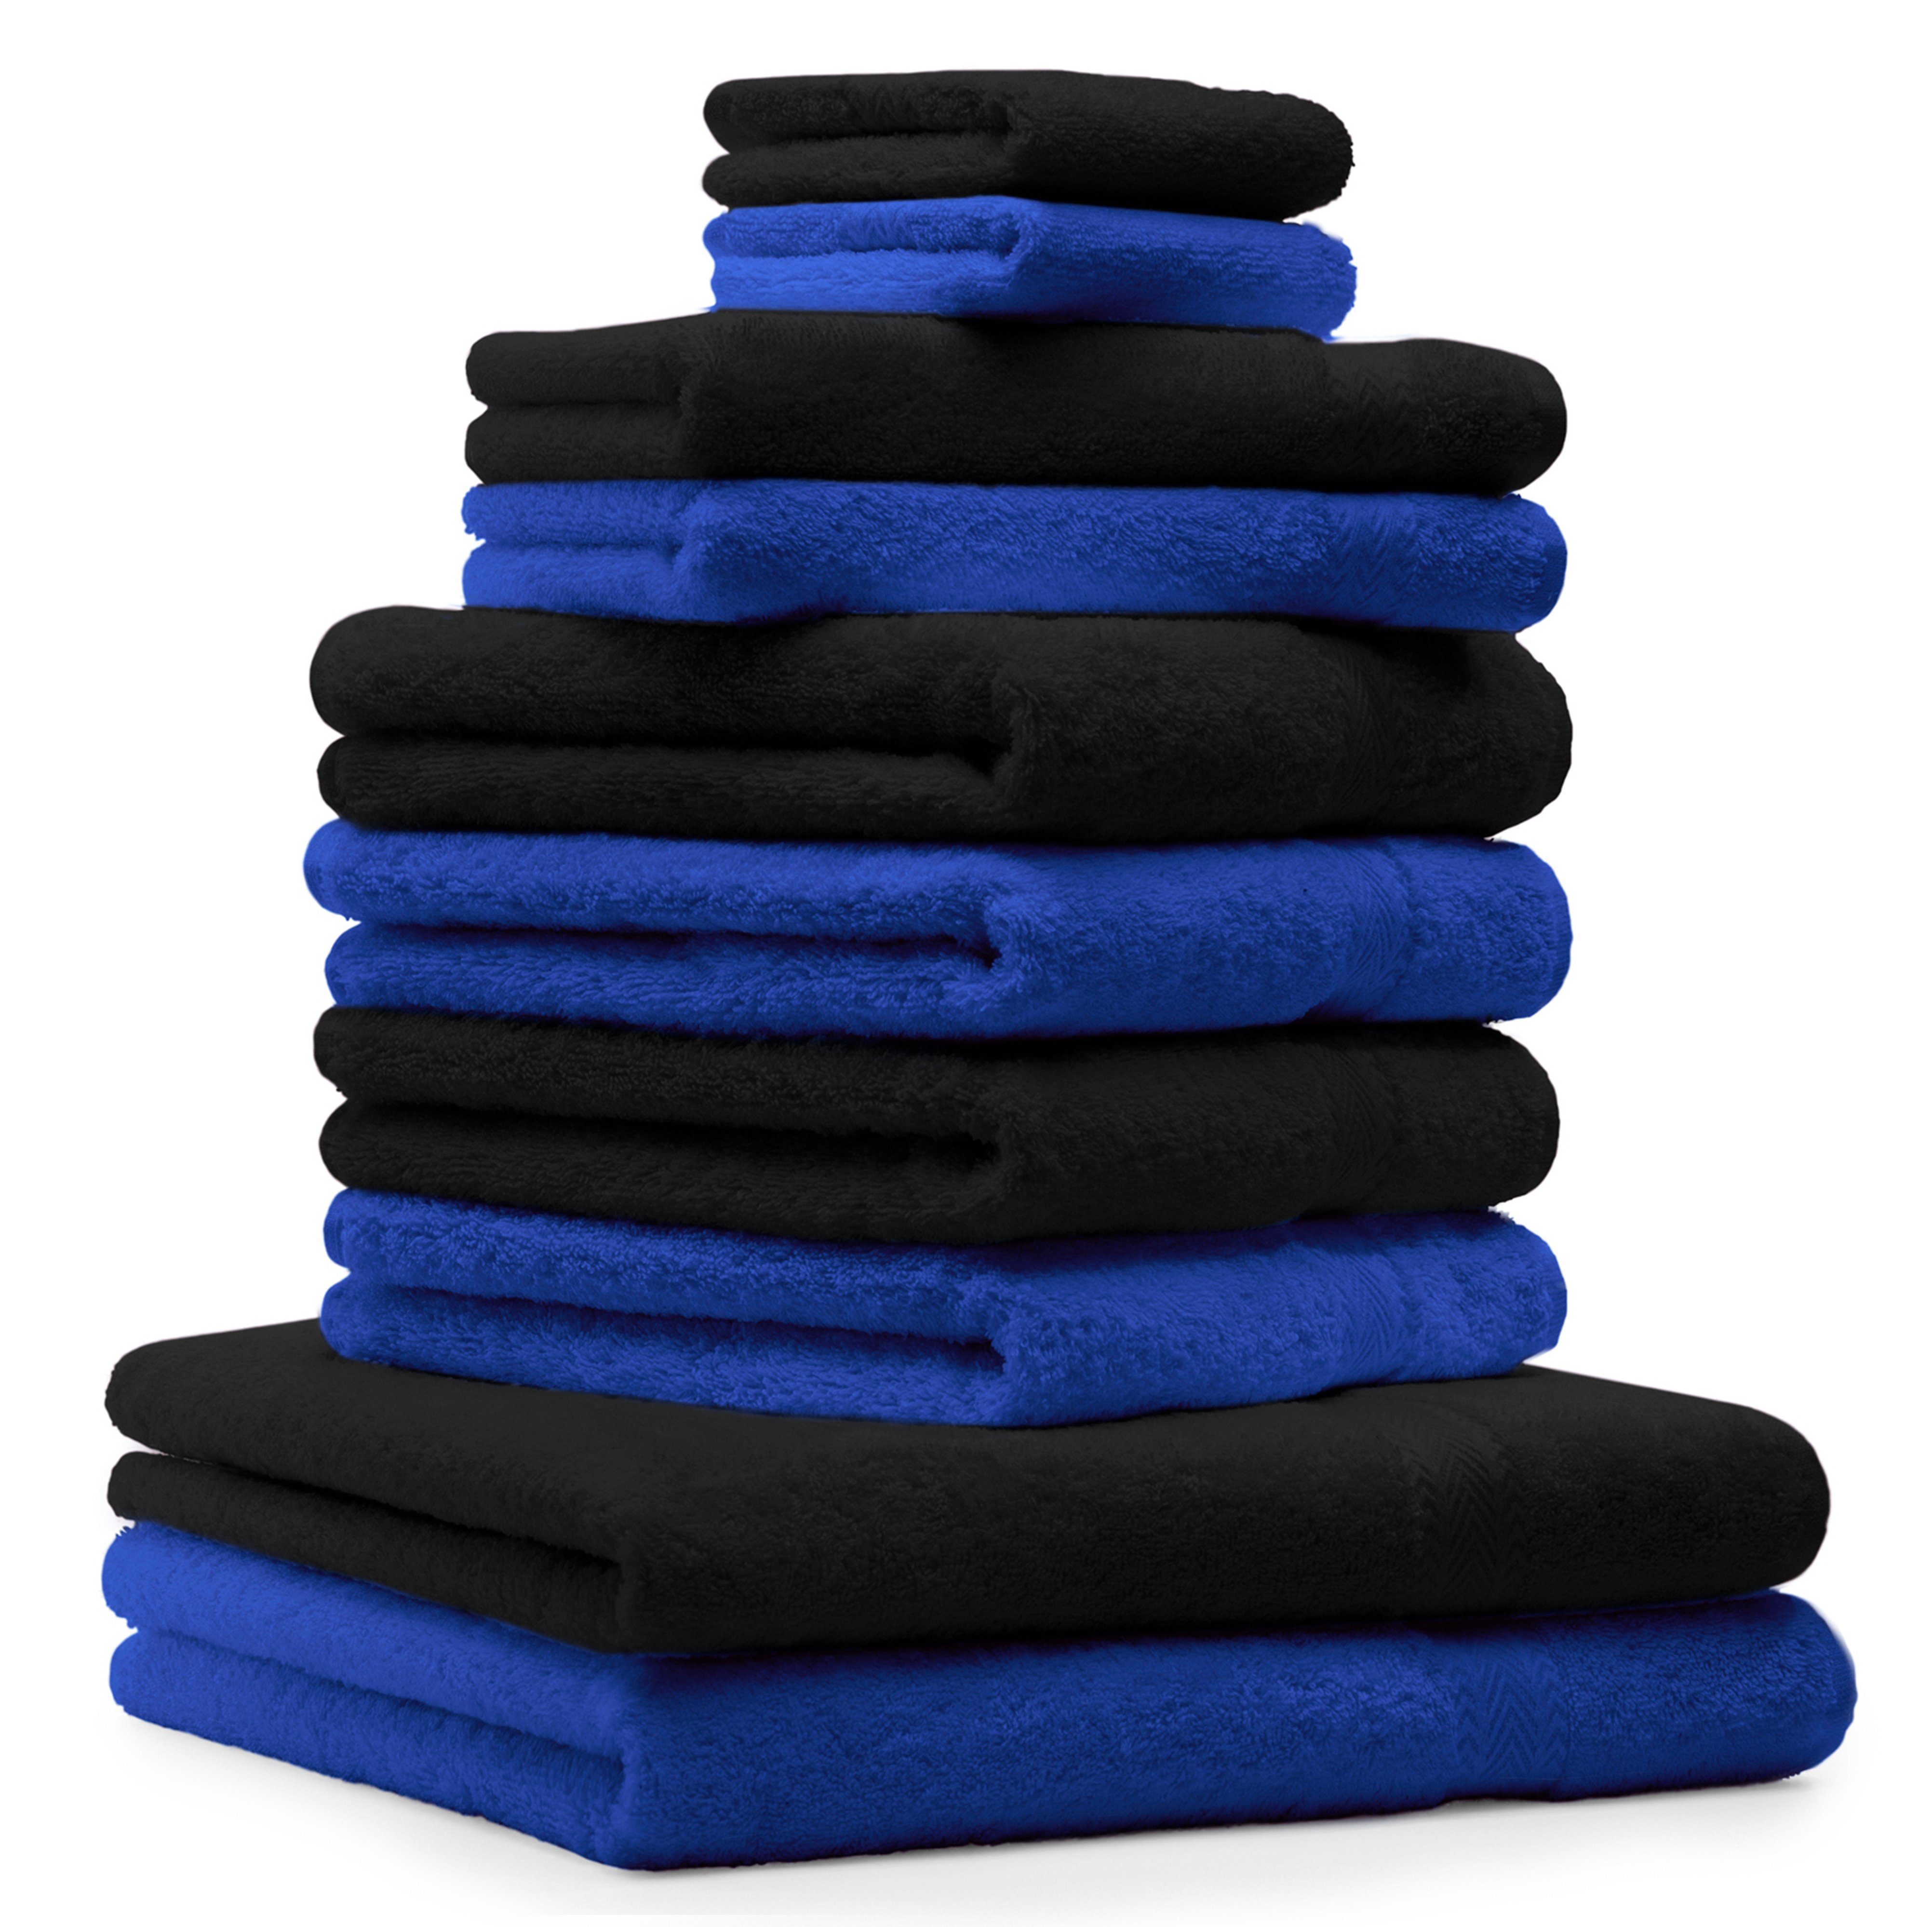 Betz Handtuch Set 10-TLG. Handtuch-Set Classic Farbe royalblau und schwarz, 100% Baumwolle